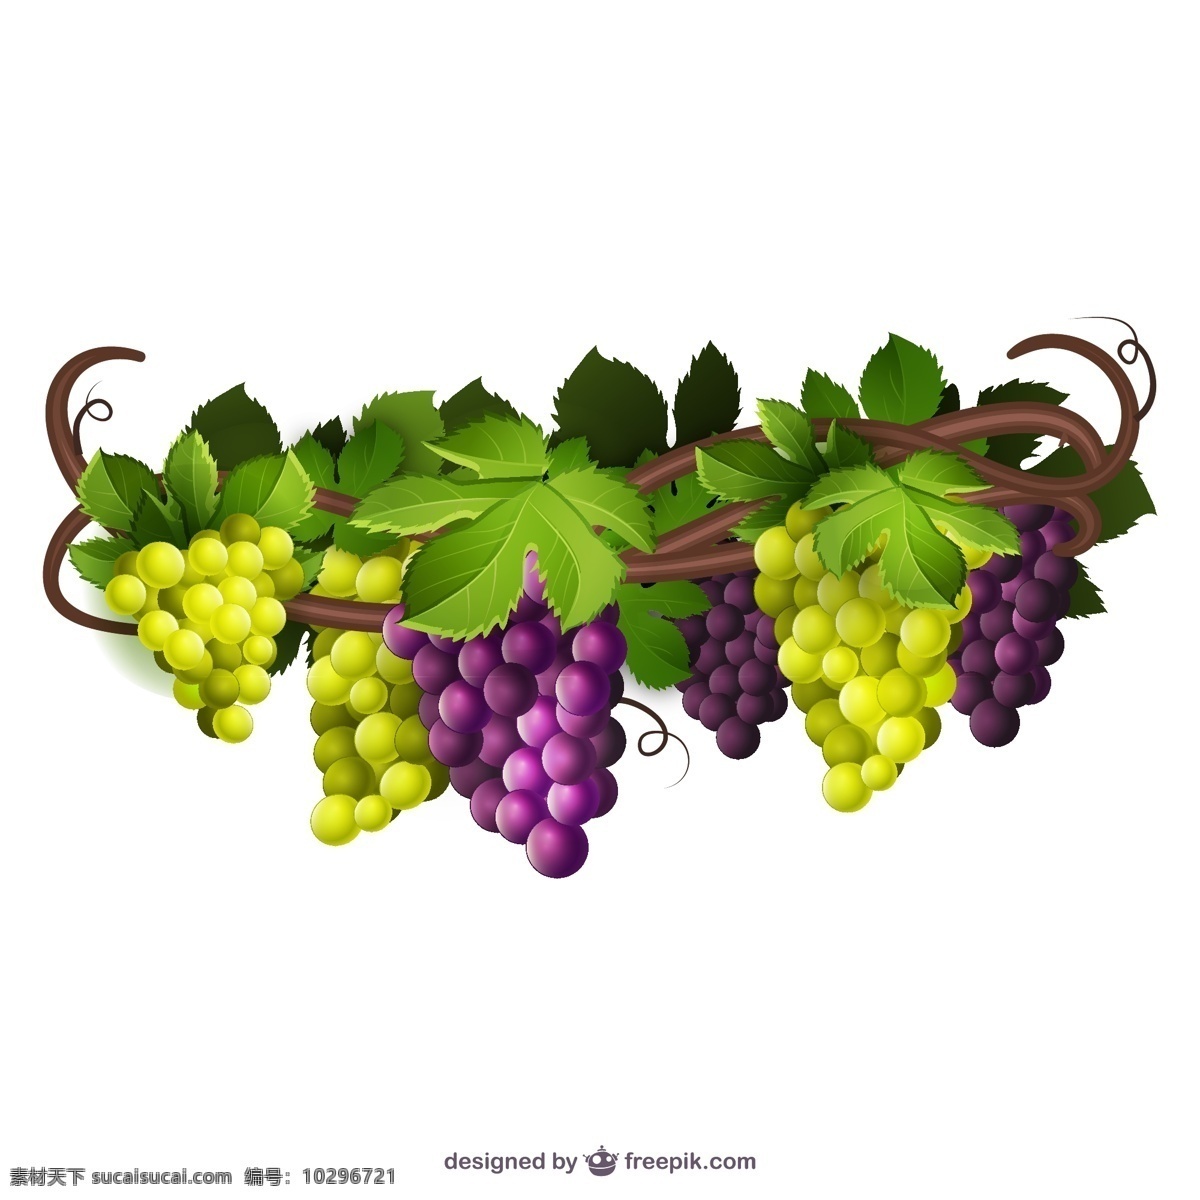 葡萄藤 矢量 葡萄 水果 紫葡萄 绿葡萄 矢量图 高清图片